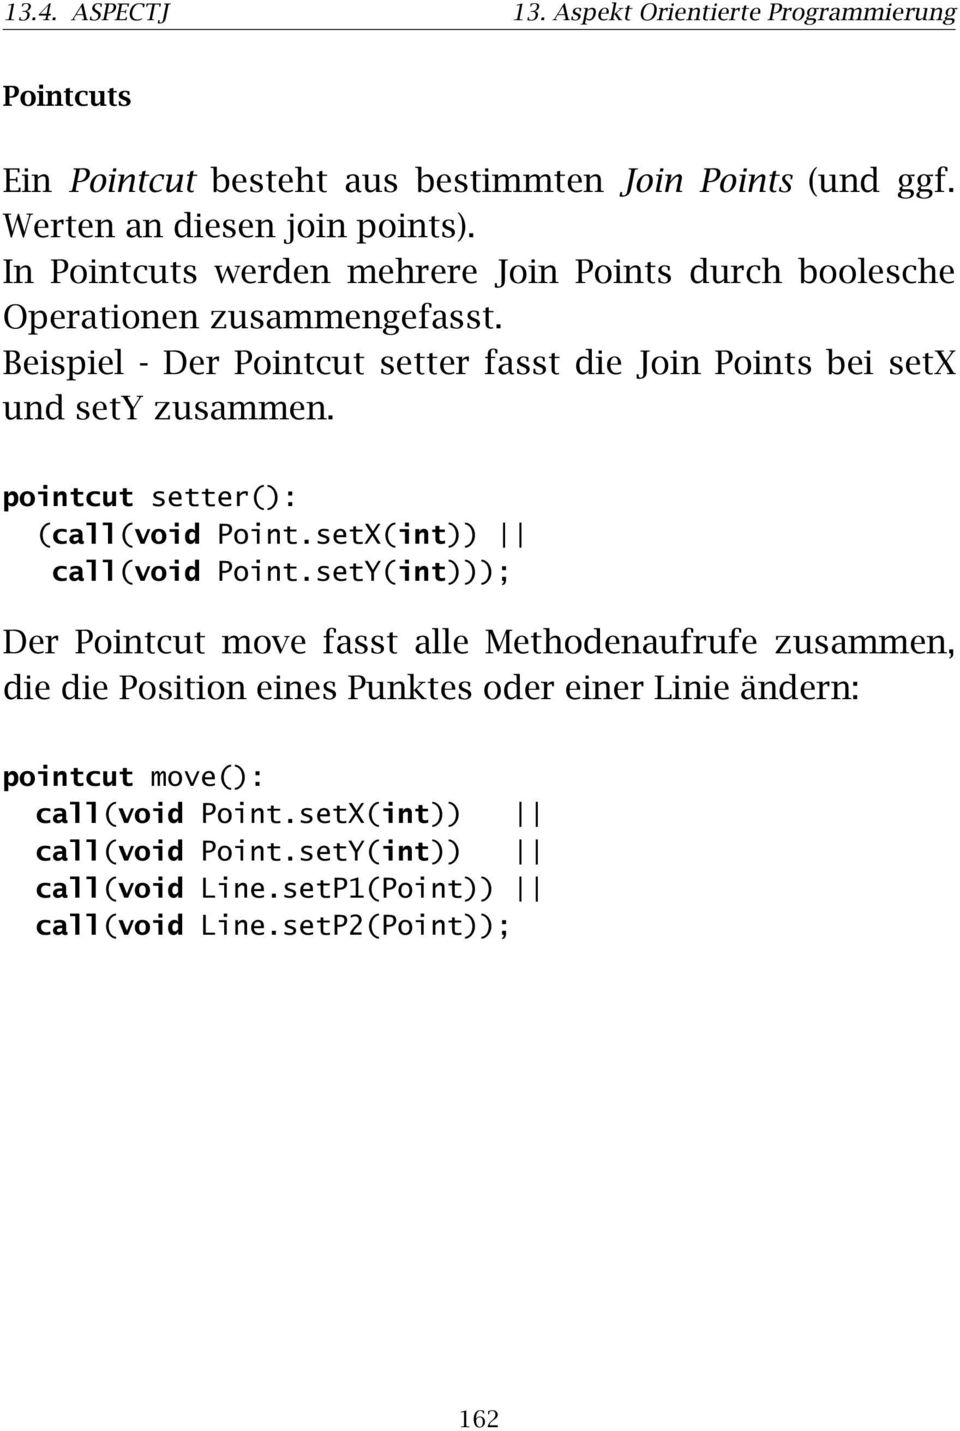 Beispiel - Der Pointcut setter fasst die Join Points bei setx und sety zusammen. pointcut setter(): (call(void Point.setX(int)) call(void Point.